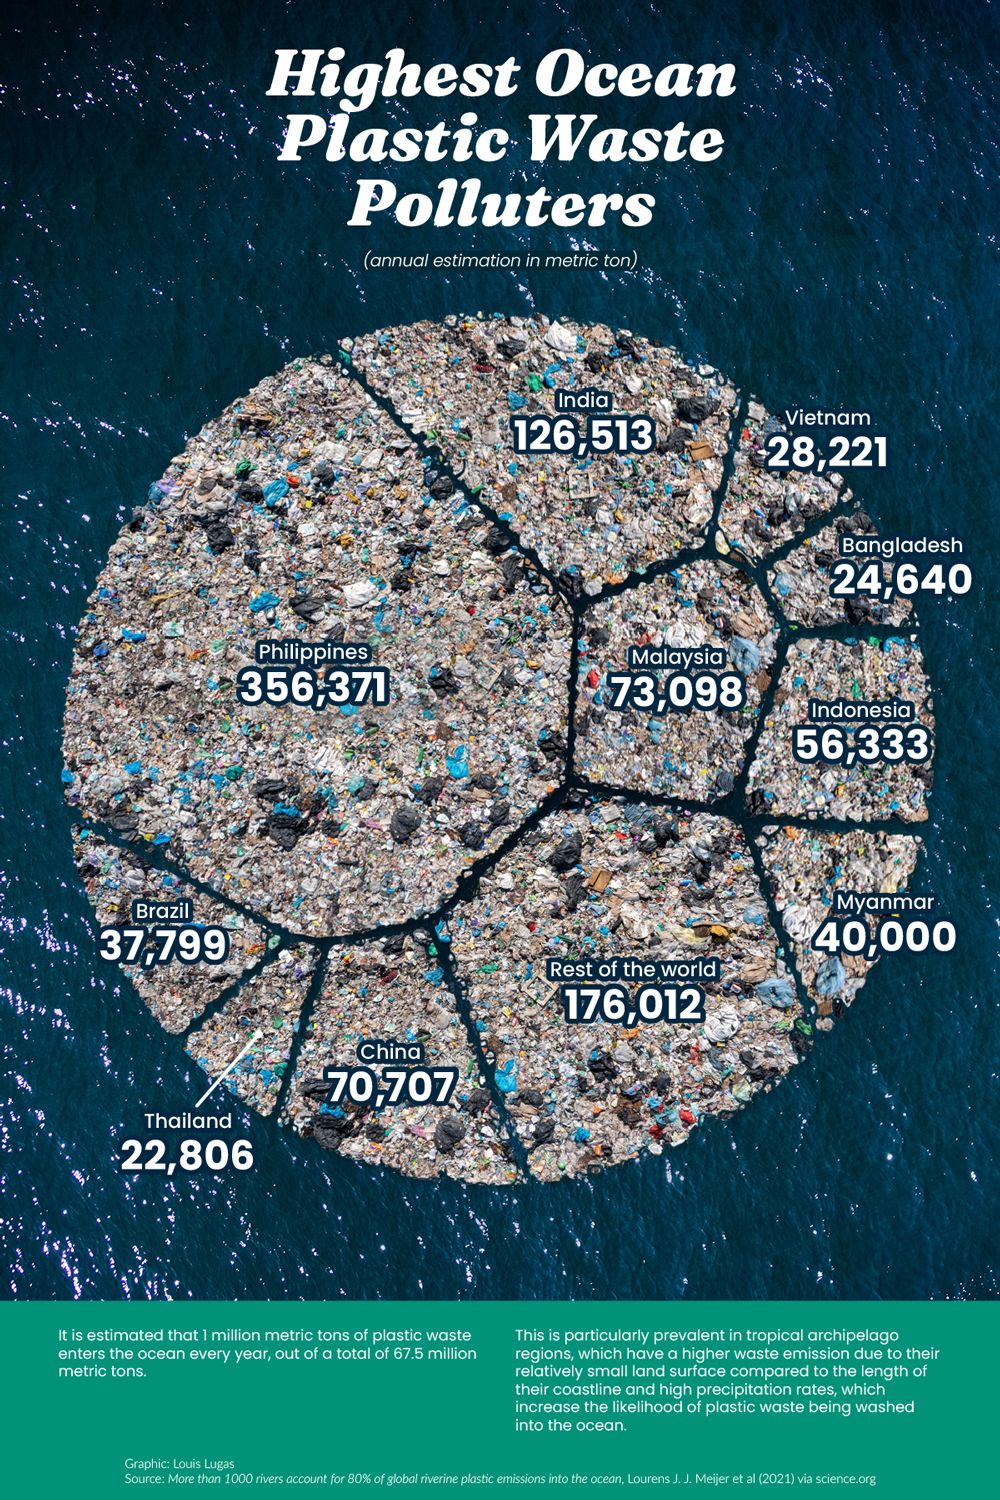  Ocean plastic waste polluting countries 